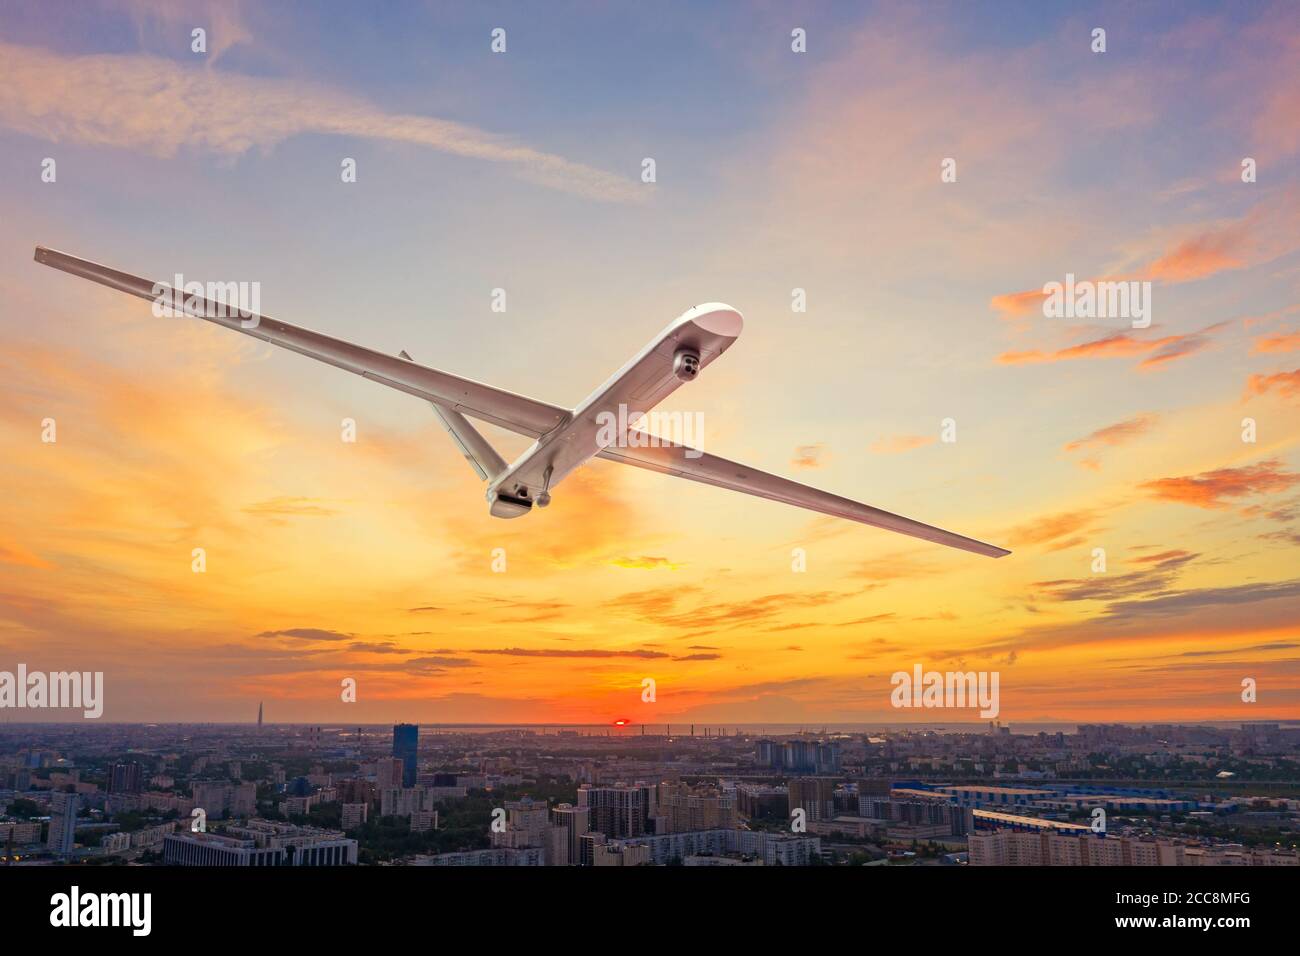 Un drone militaire sans pilote uav volant dans les airs au-dessus du ville au coucher du soleil Banque D'Images